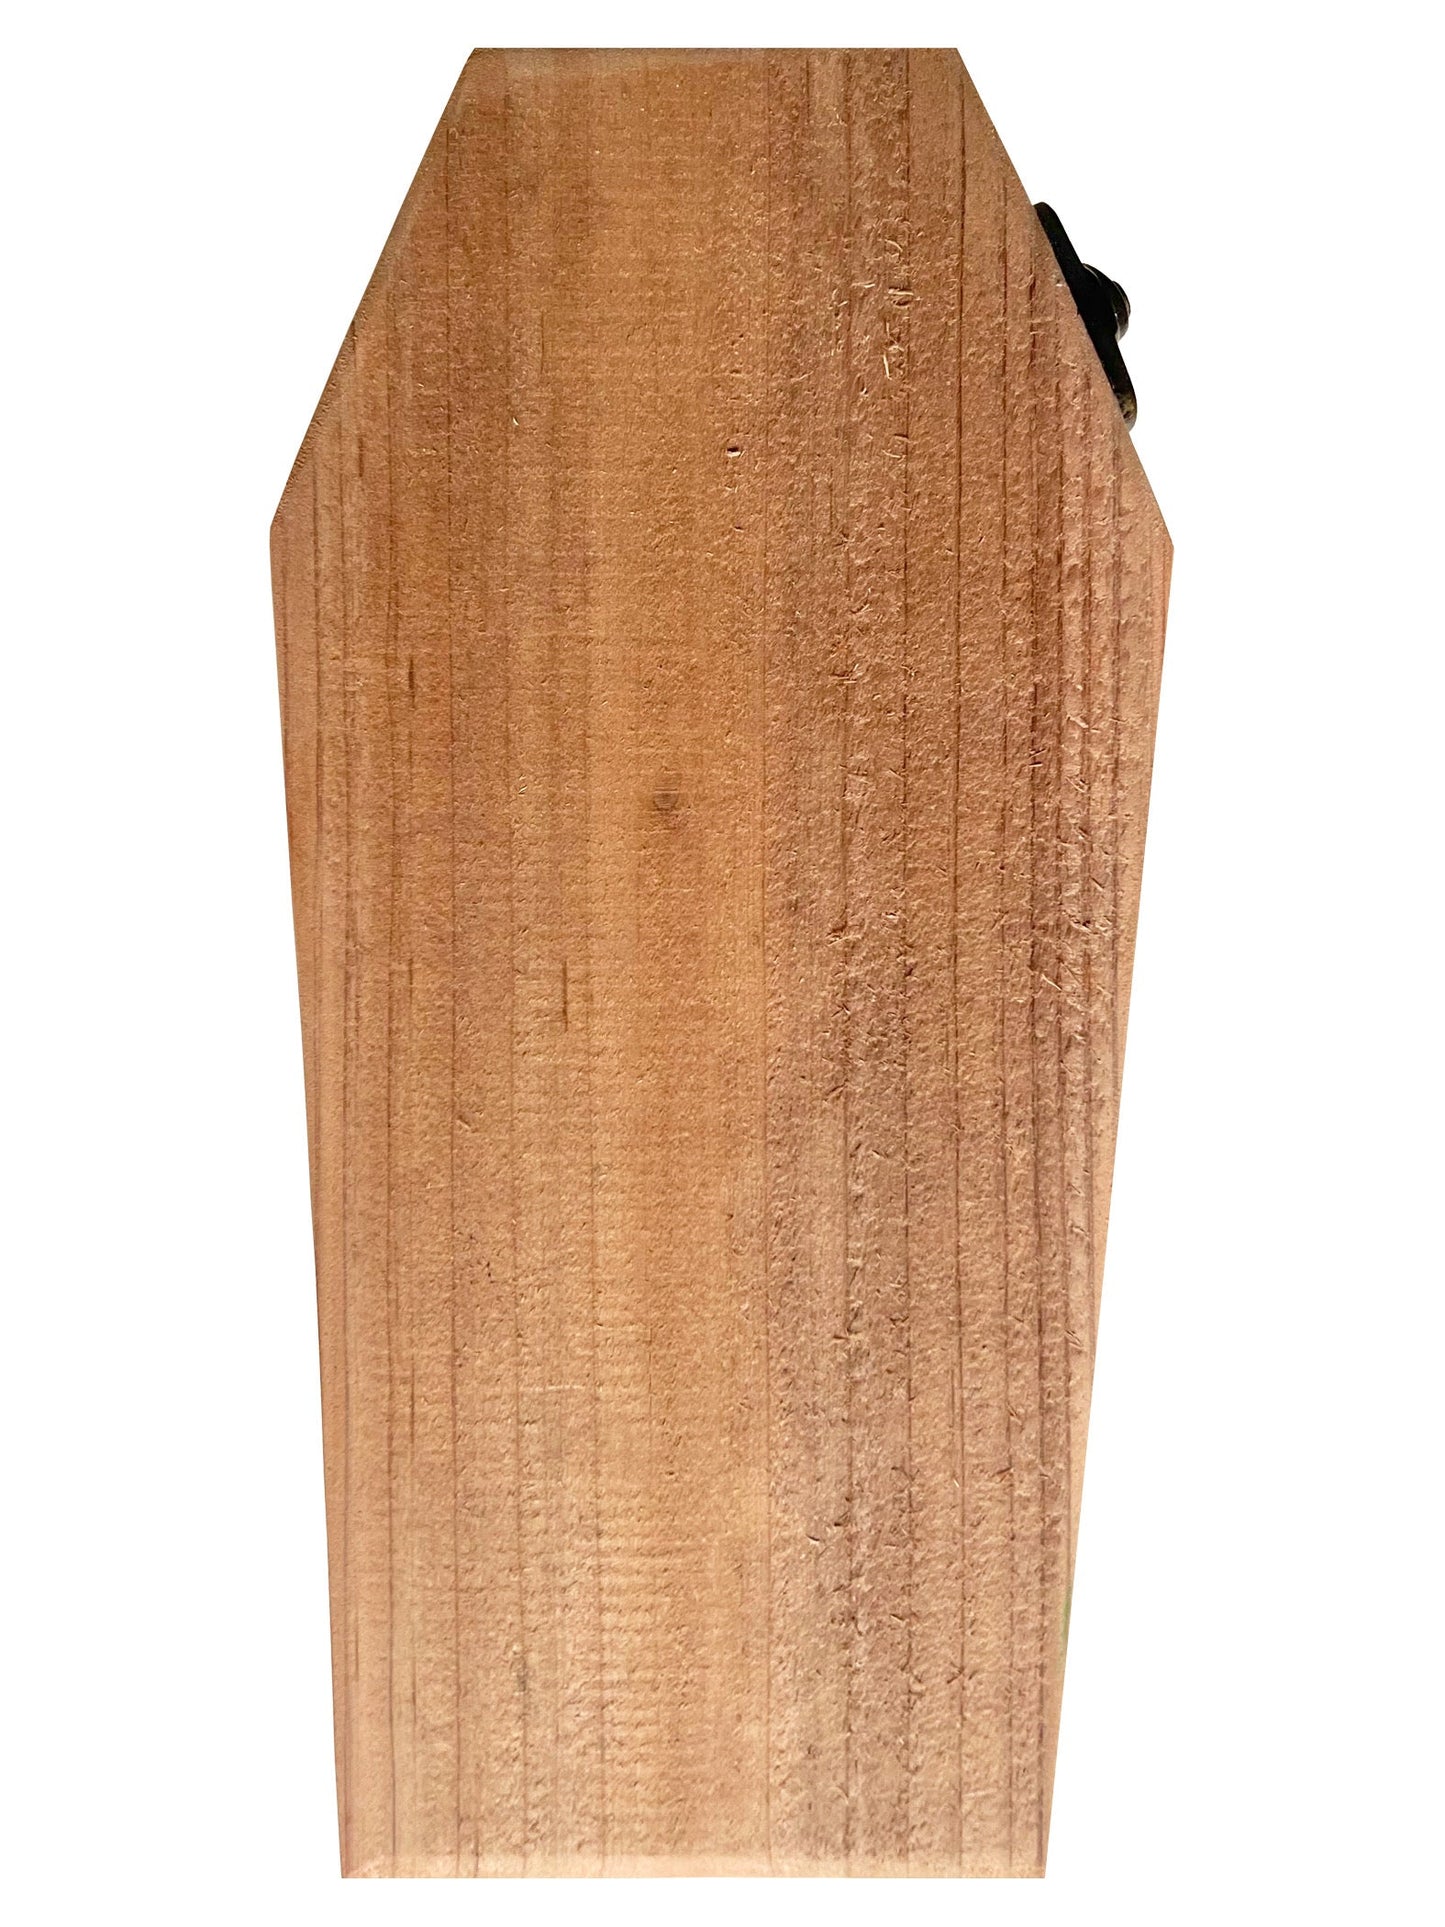 SPIDER VENOM Hot Sauce in a Handmade Cedar Coffin